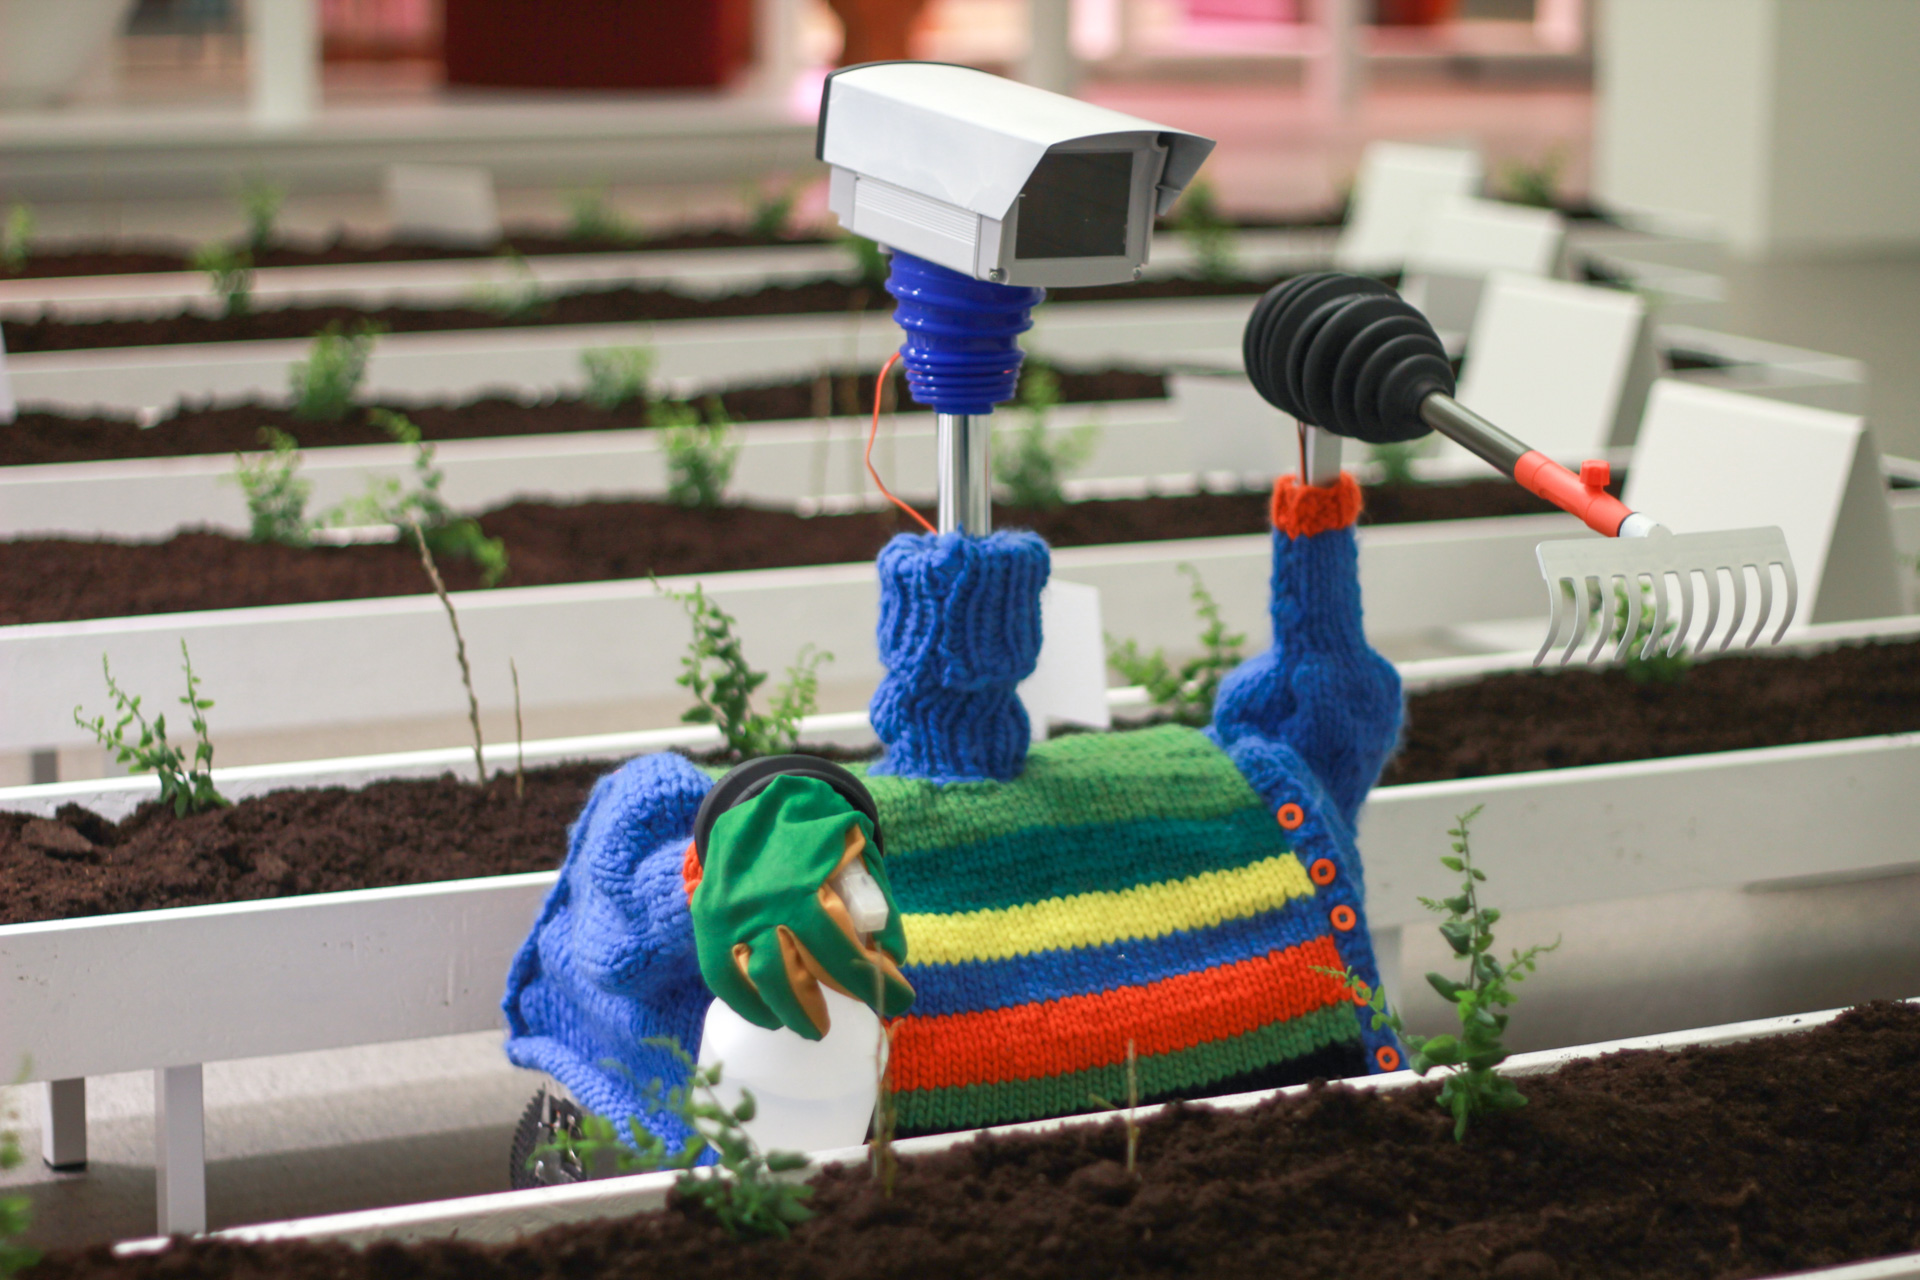 Gardening robot at work